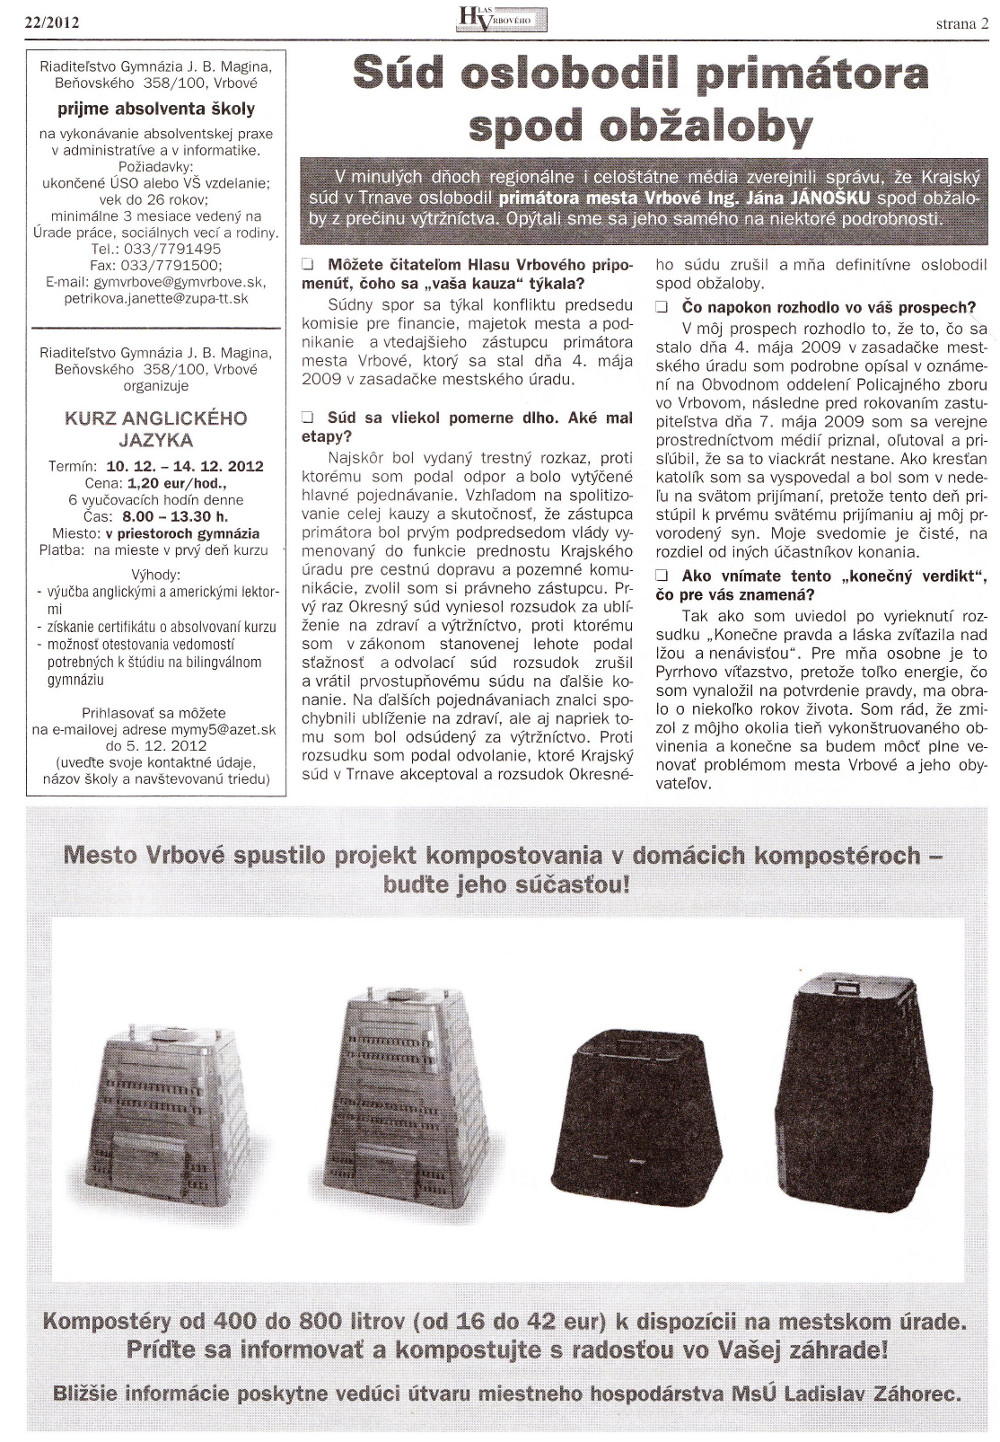 Hlas Vrbového 22/2012, strana 2